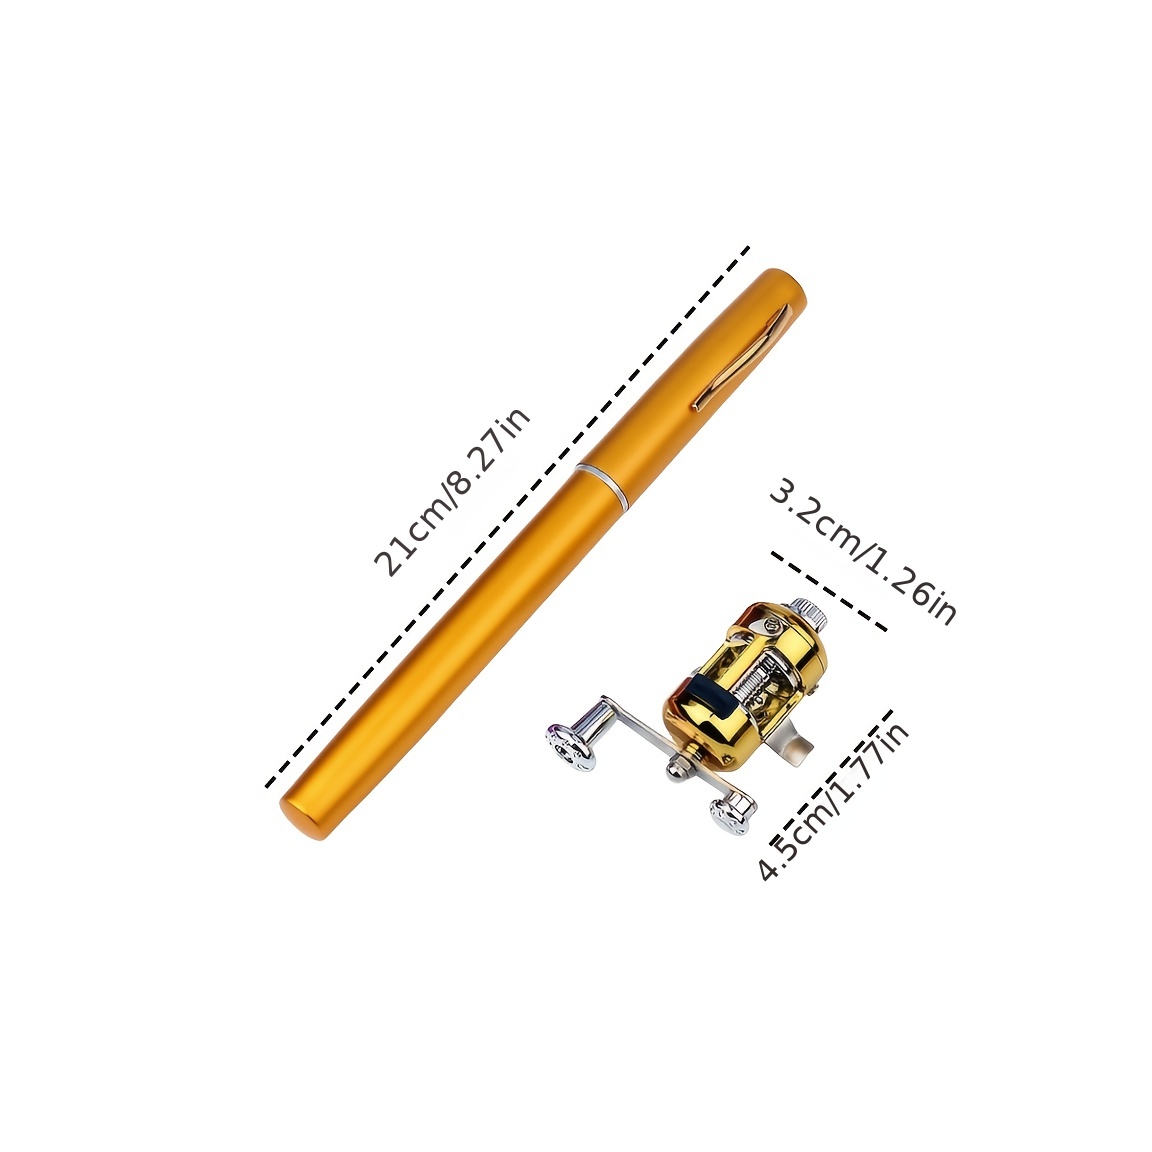 1.6m Pen Shape Telescopic Pen Fishing Pole Mini Pocket Fishing Rod